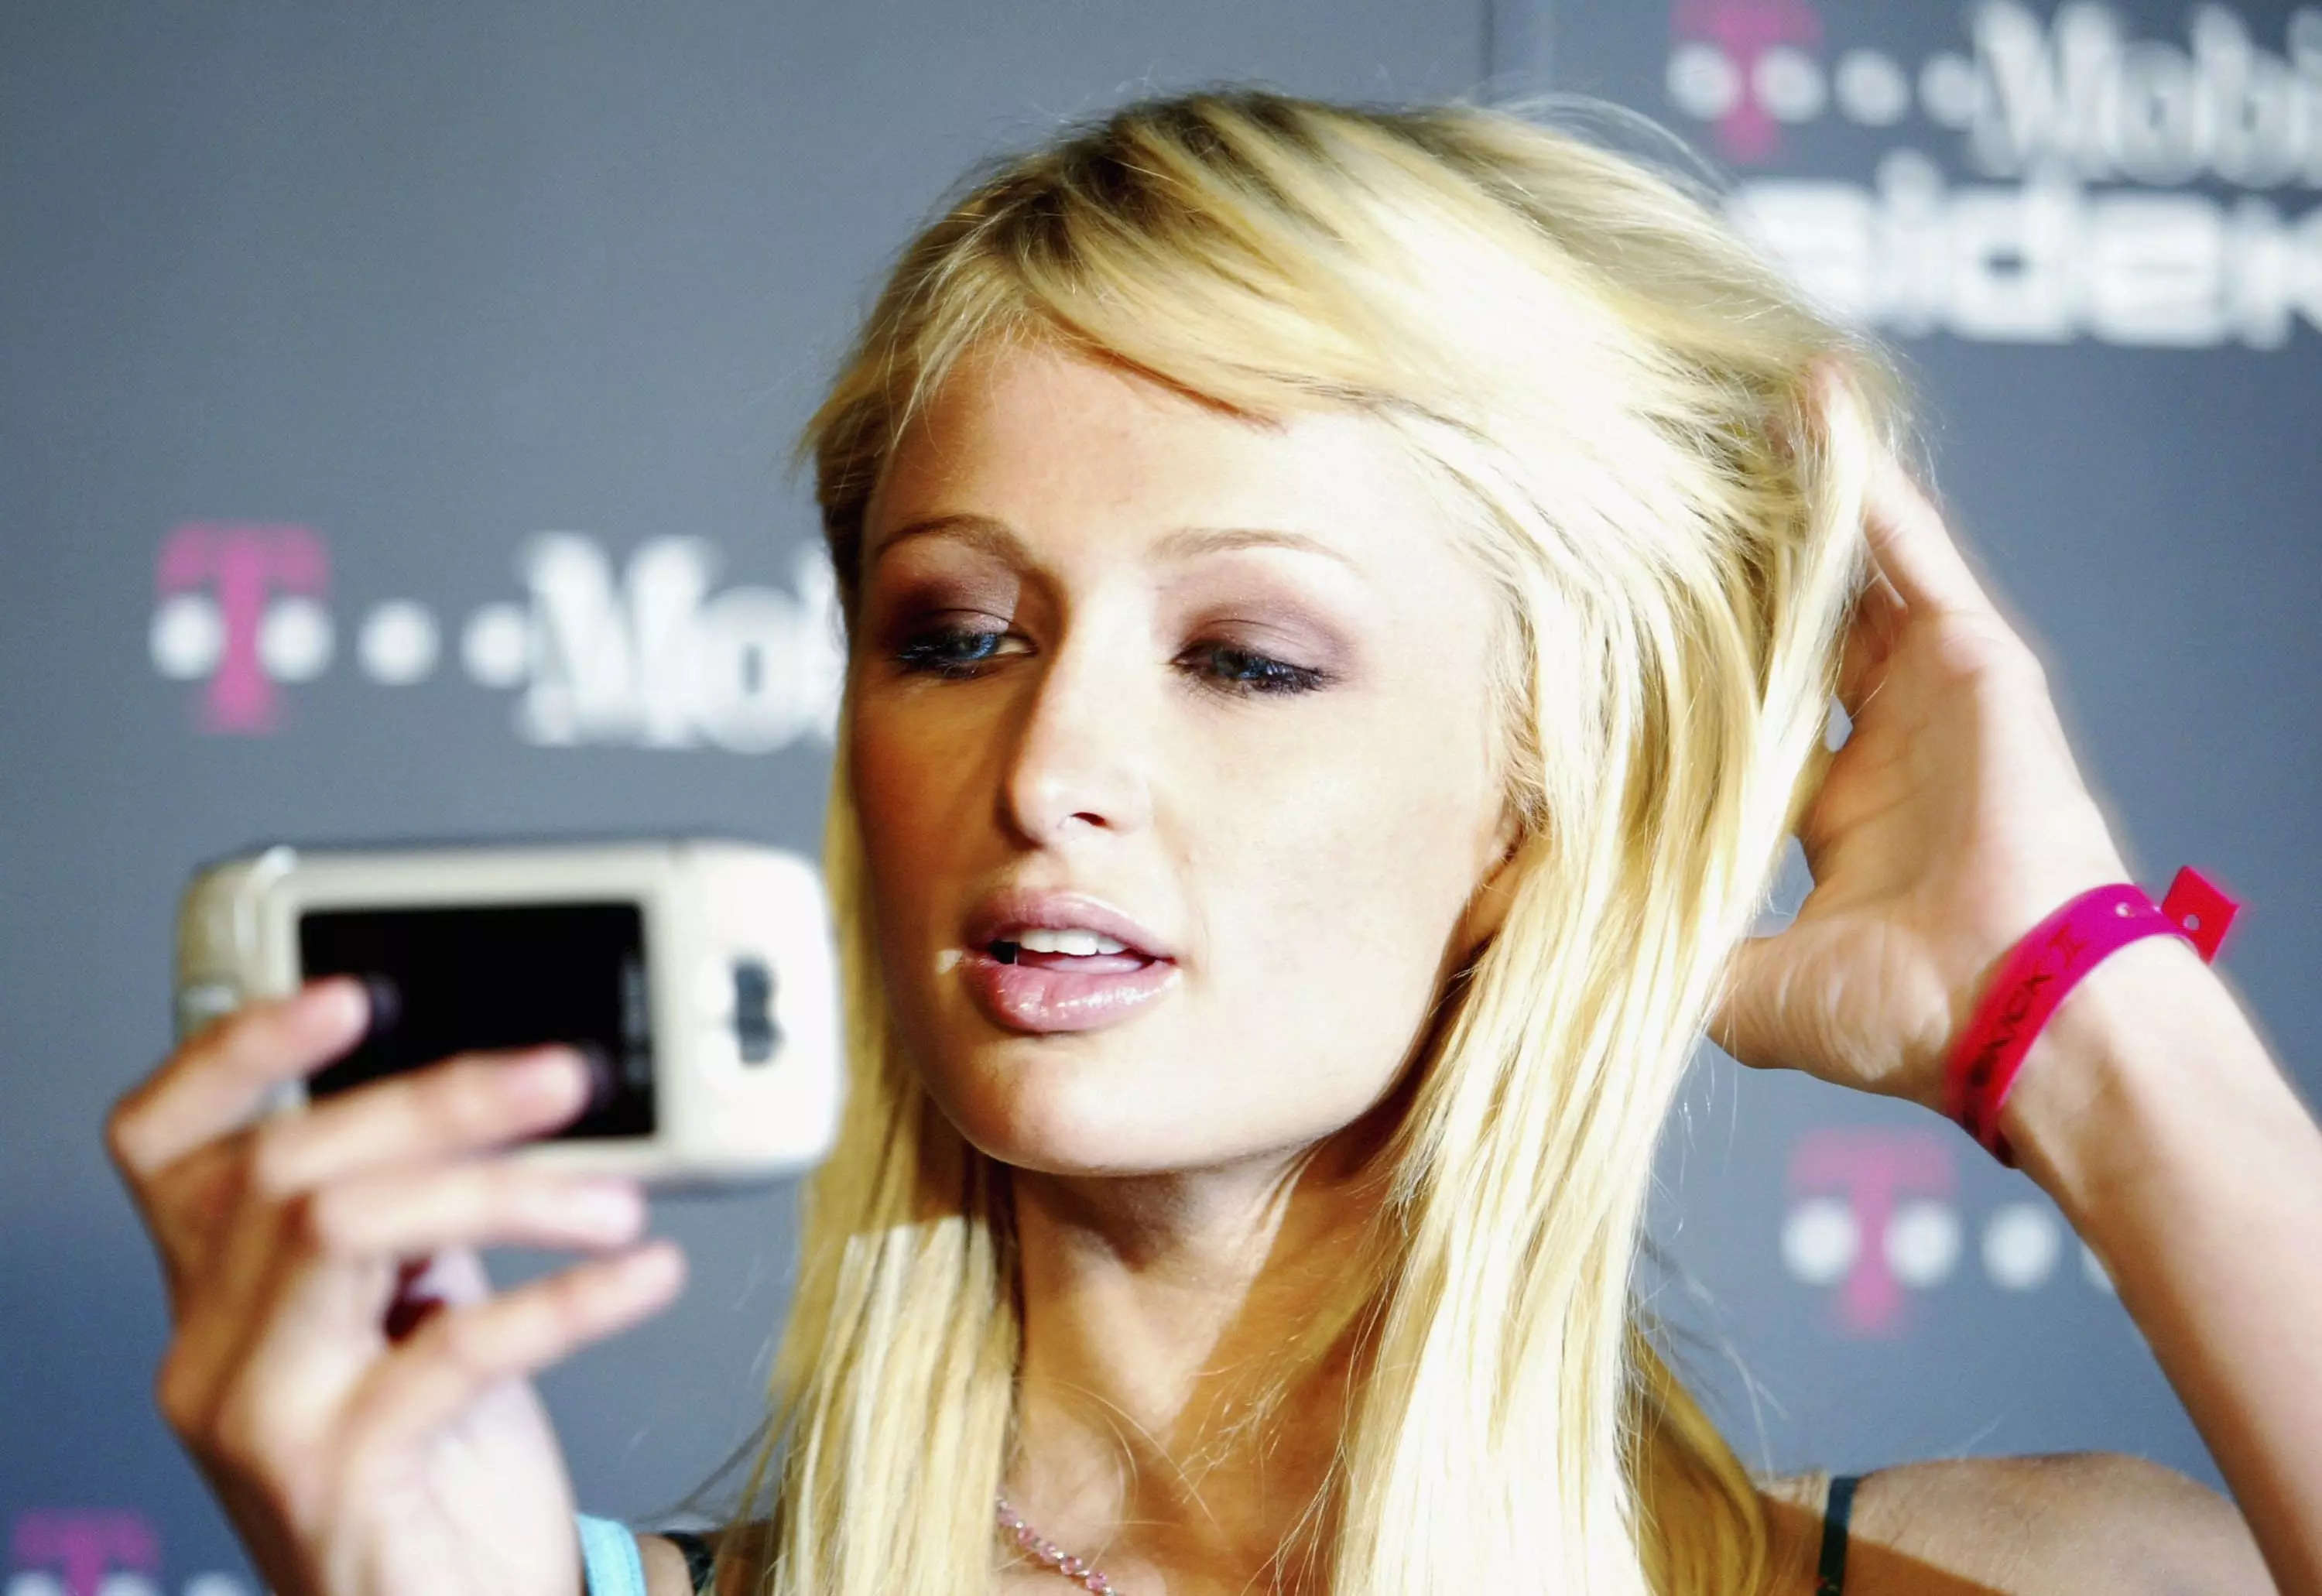 Paris Hilton holding a mobile phone.